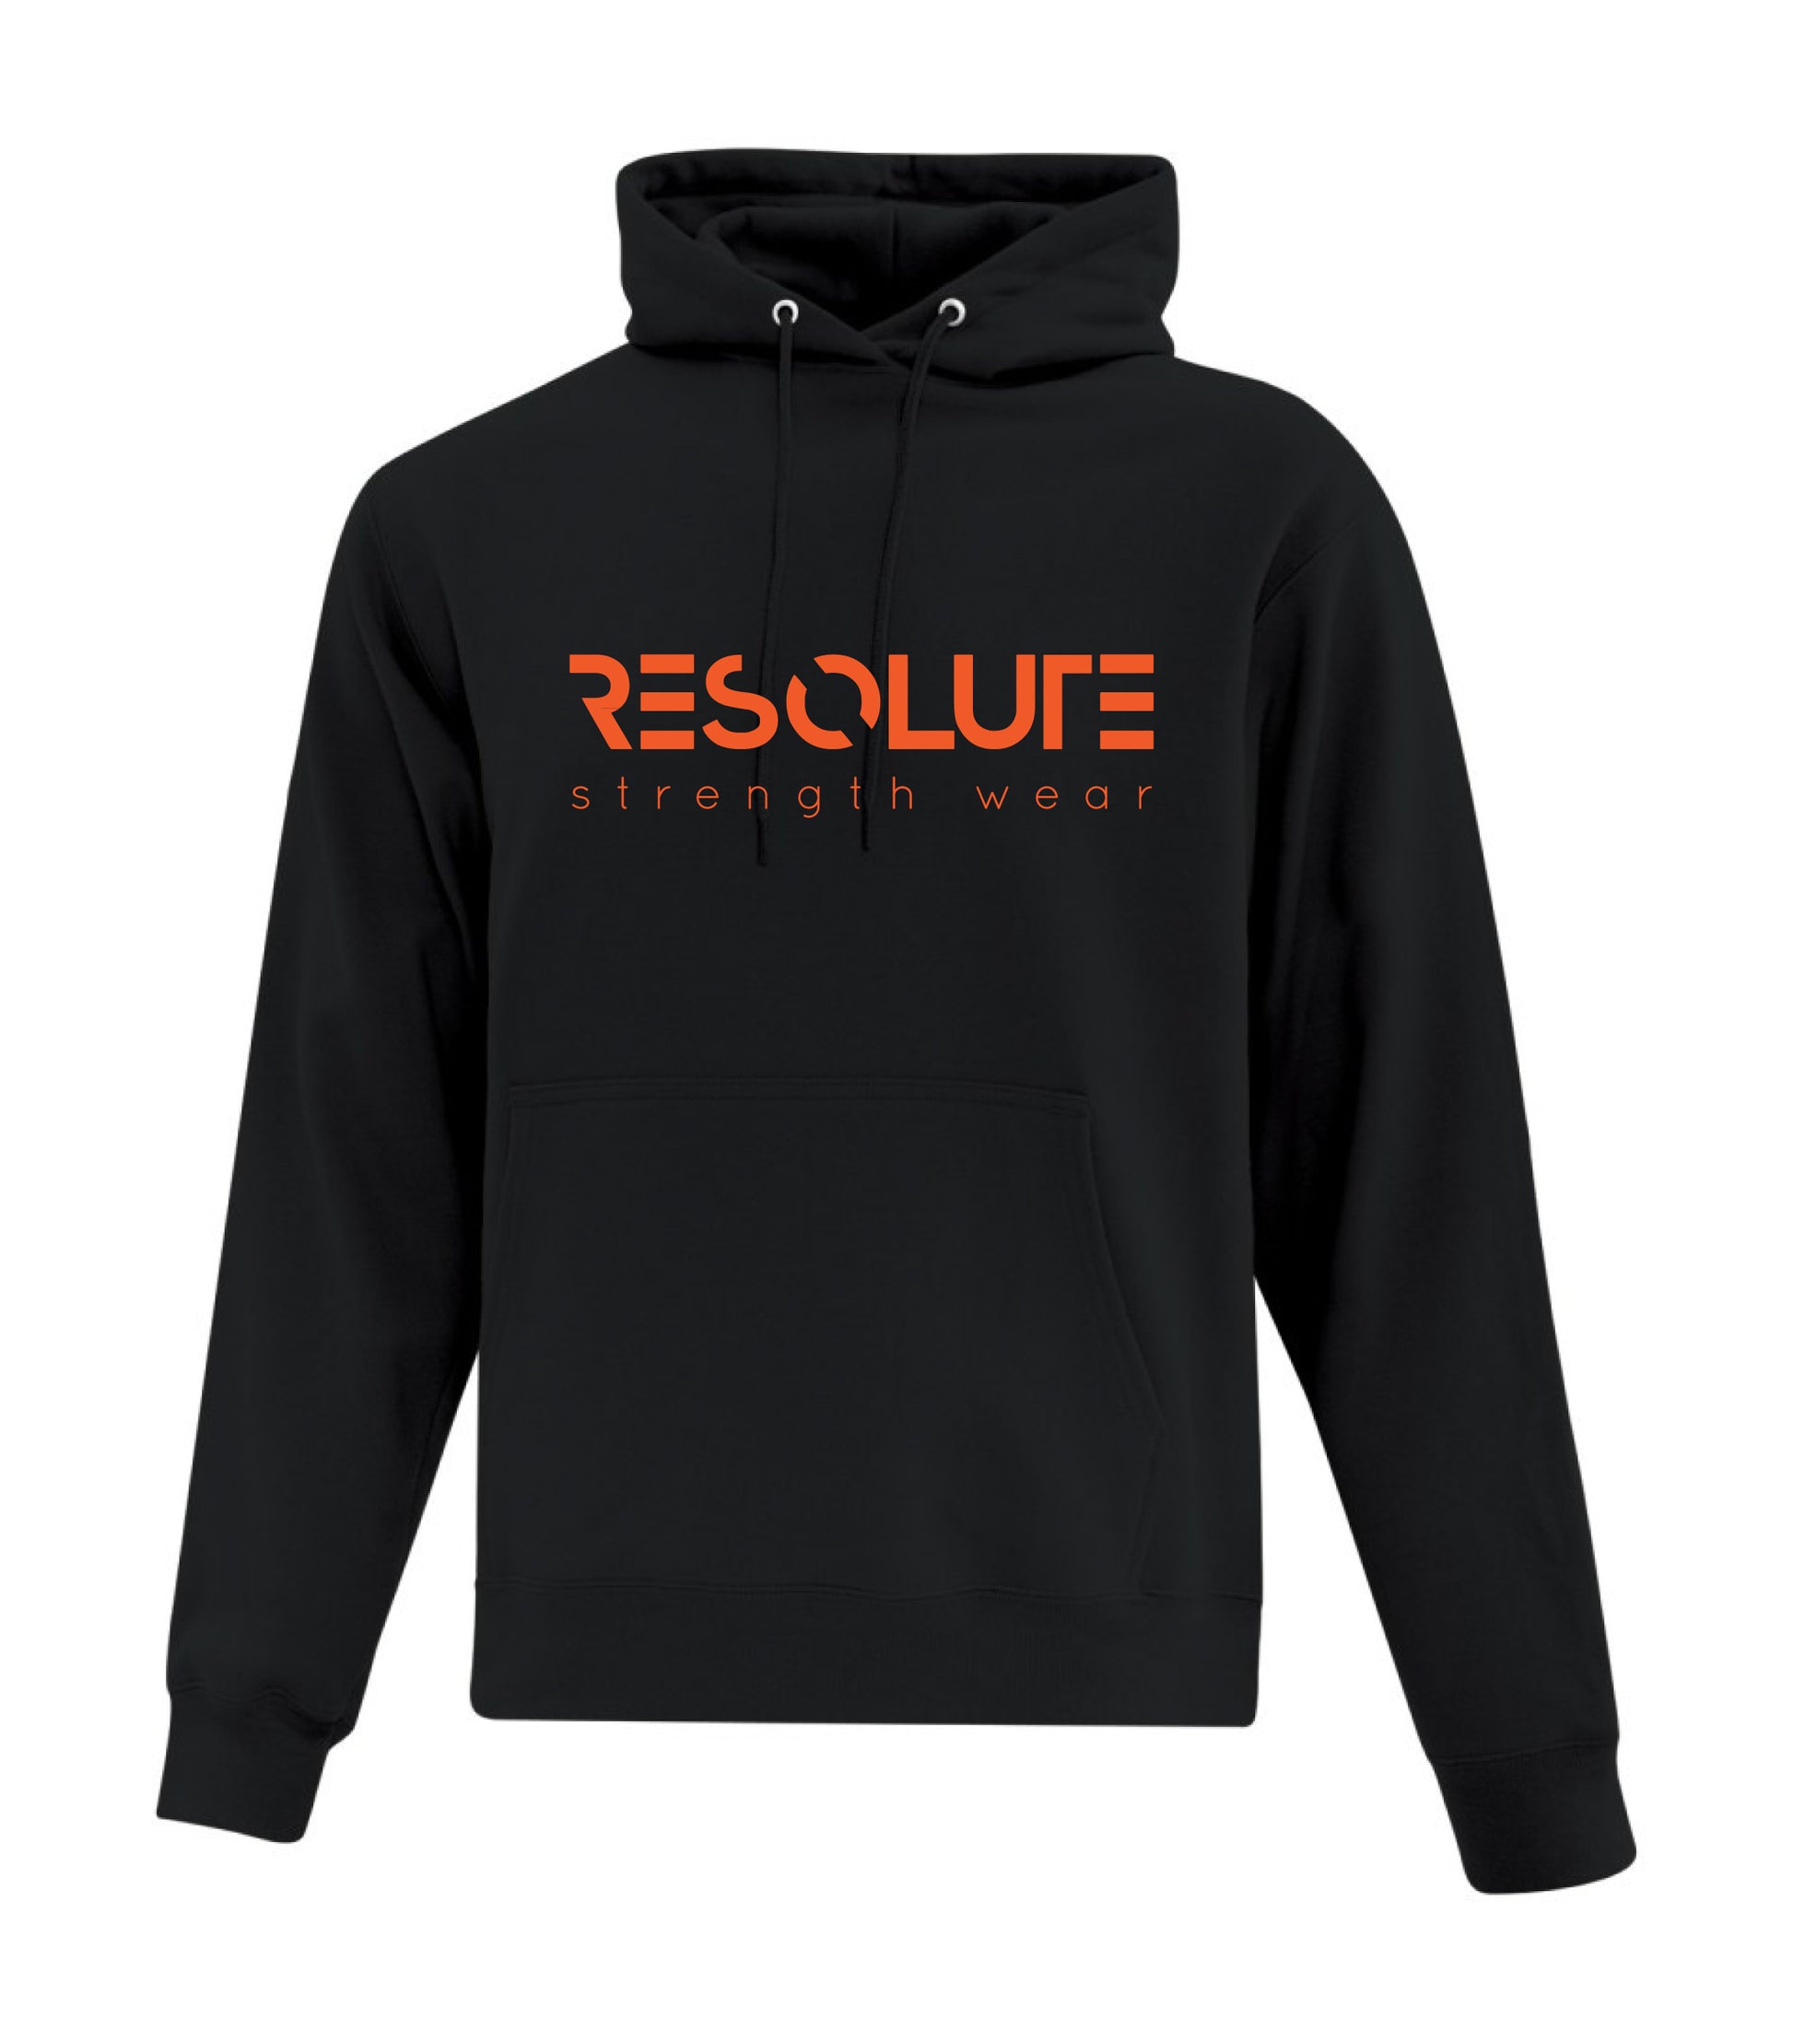 Resolute Hoodie - Black - Resolute Strength Wear